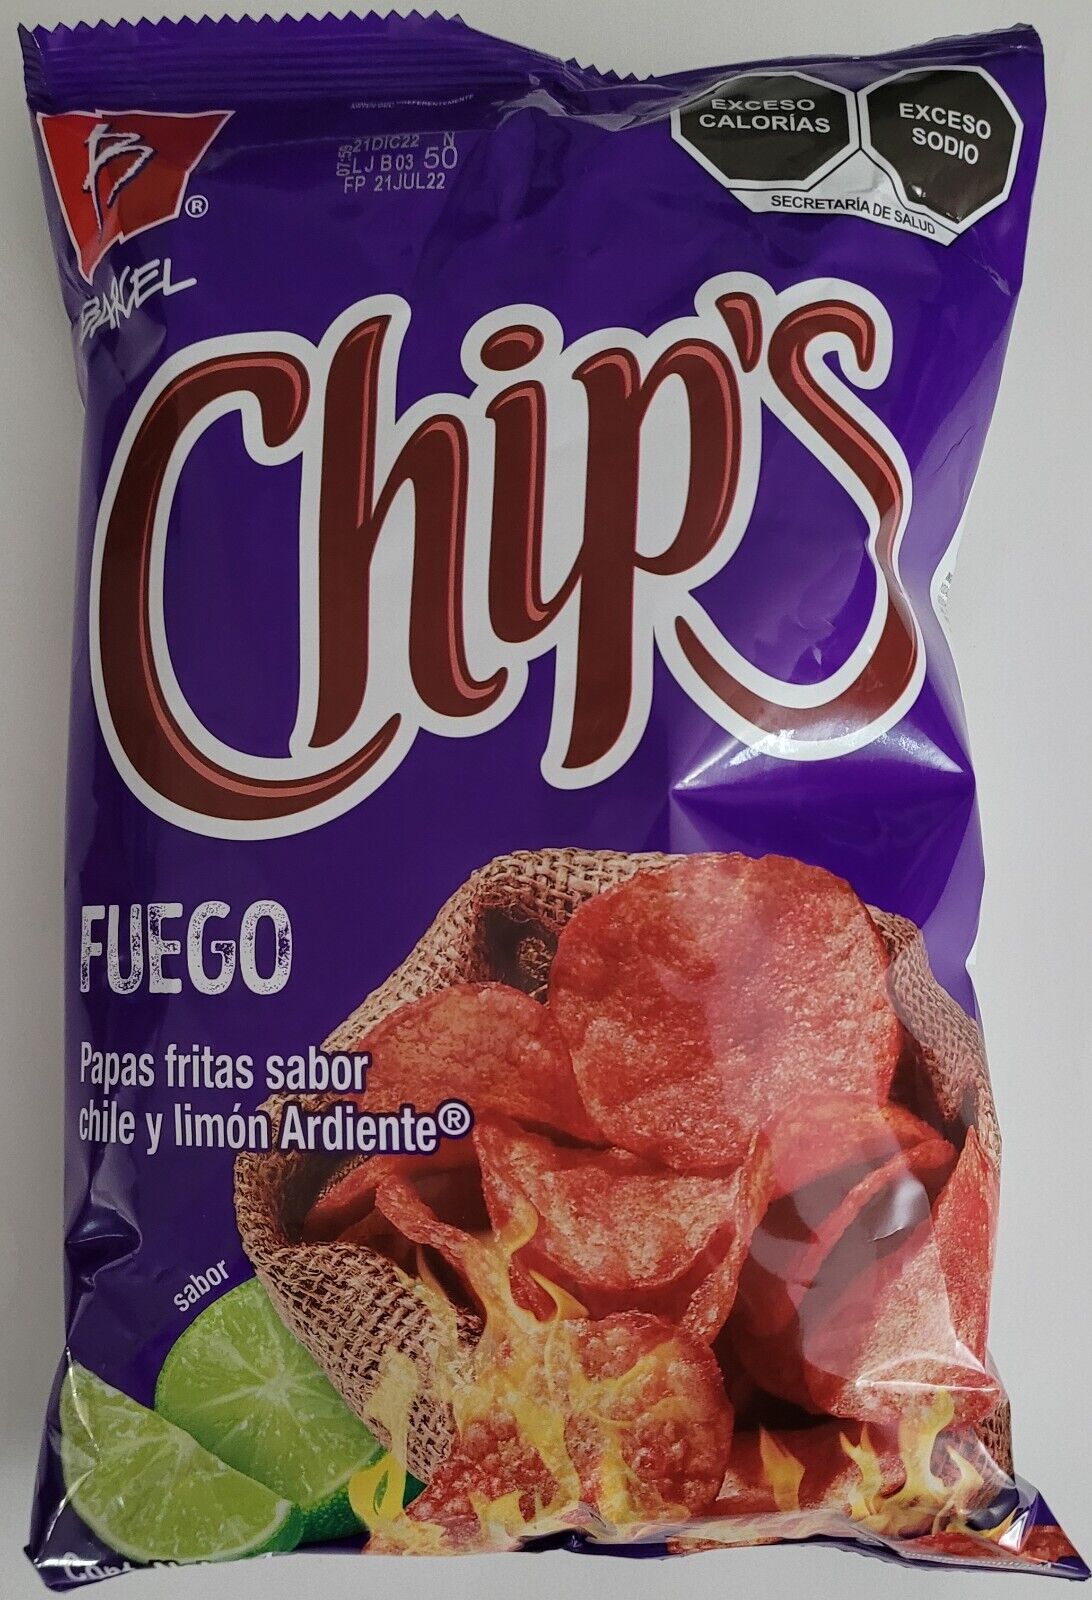 Barcel "chips" Kettlez Fuego 170g